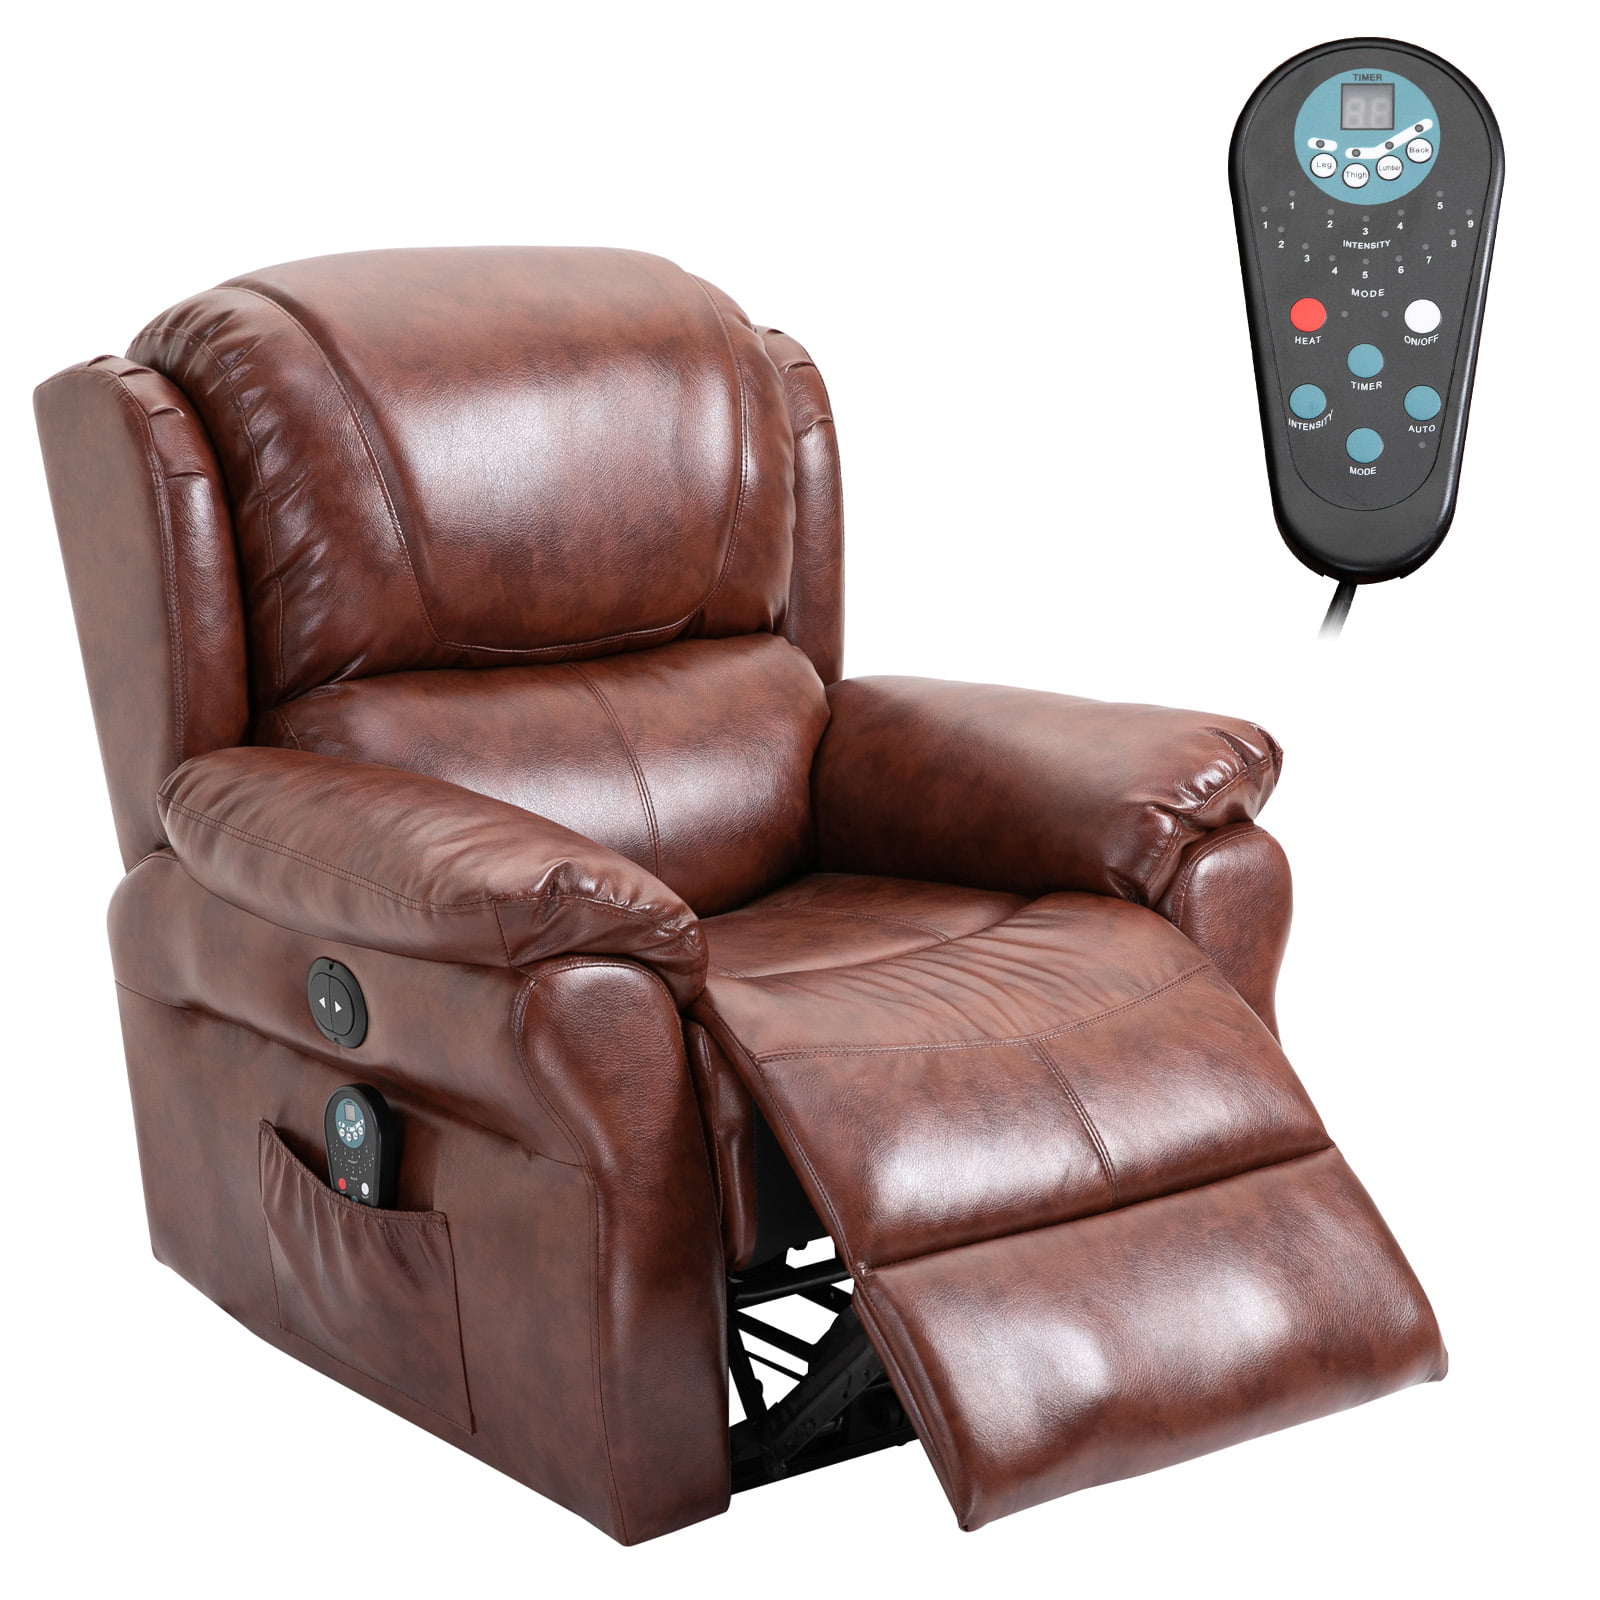 Homcom Power Massage Recliner Chair, Massage Recliner Chair With Heat